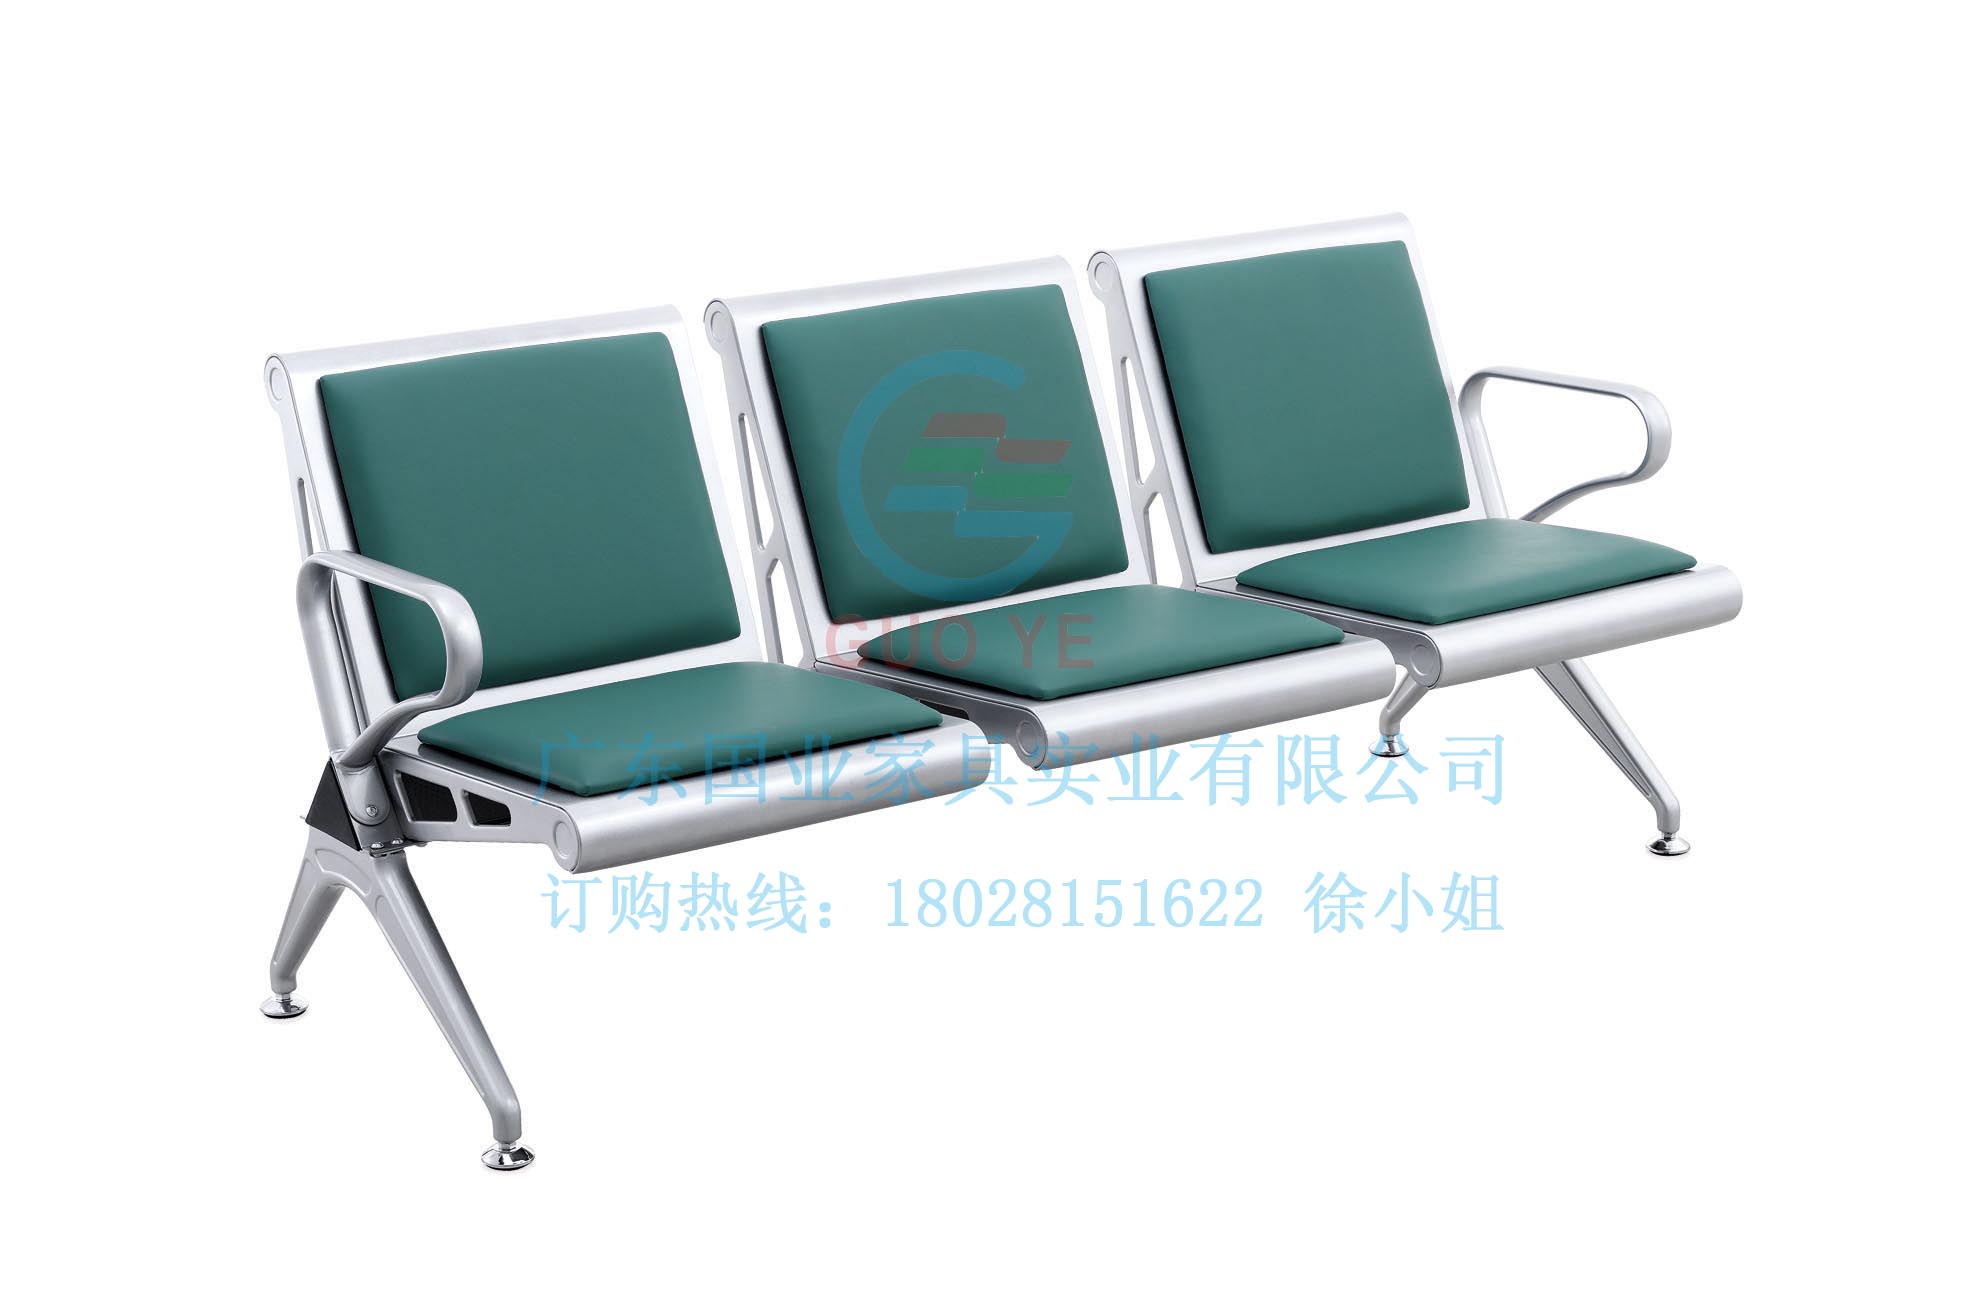 供应用于医院等候区|广东国业|300元的排椅C8301F图片